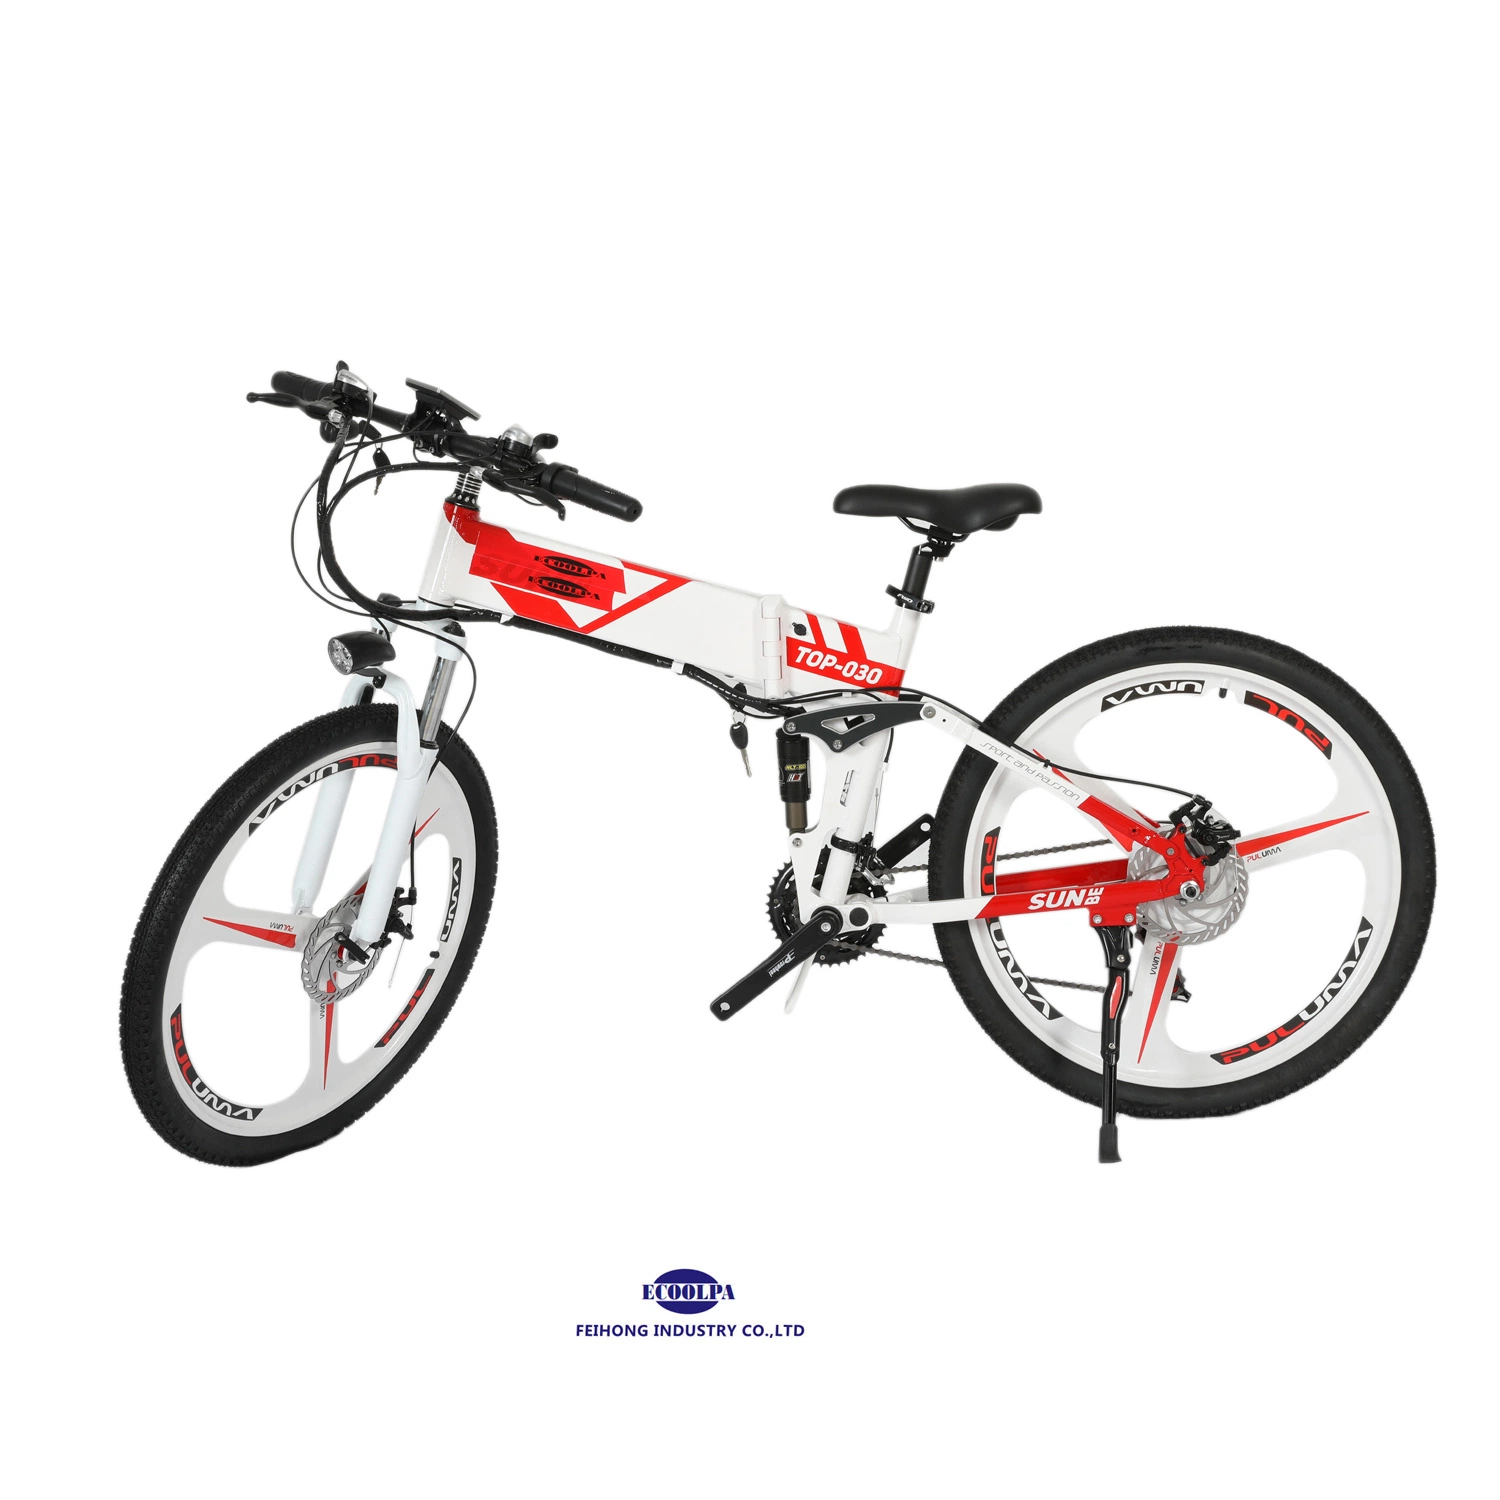 دراجة كهربائية دراجة بخارية دراجة بخارية 26 بوصة محرك بقوة 48 فولت 500 واط بنظام مغرفة المحرك في بطارية قابلة للفصل دراجة الترابية